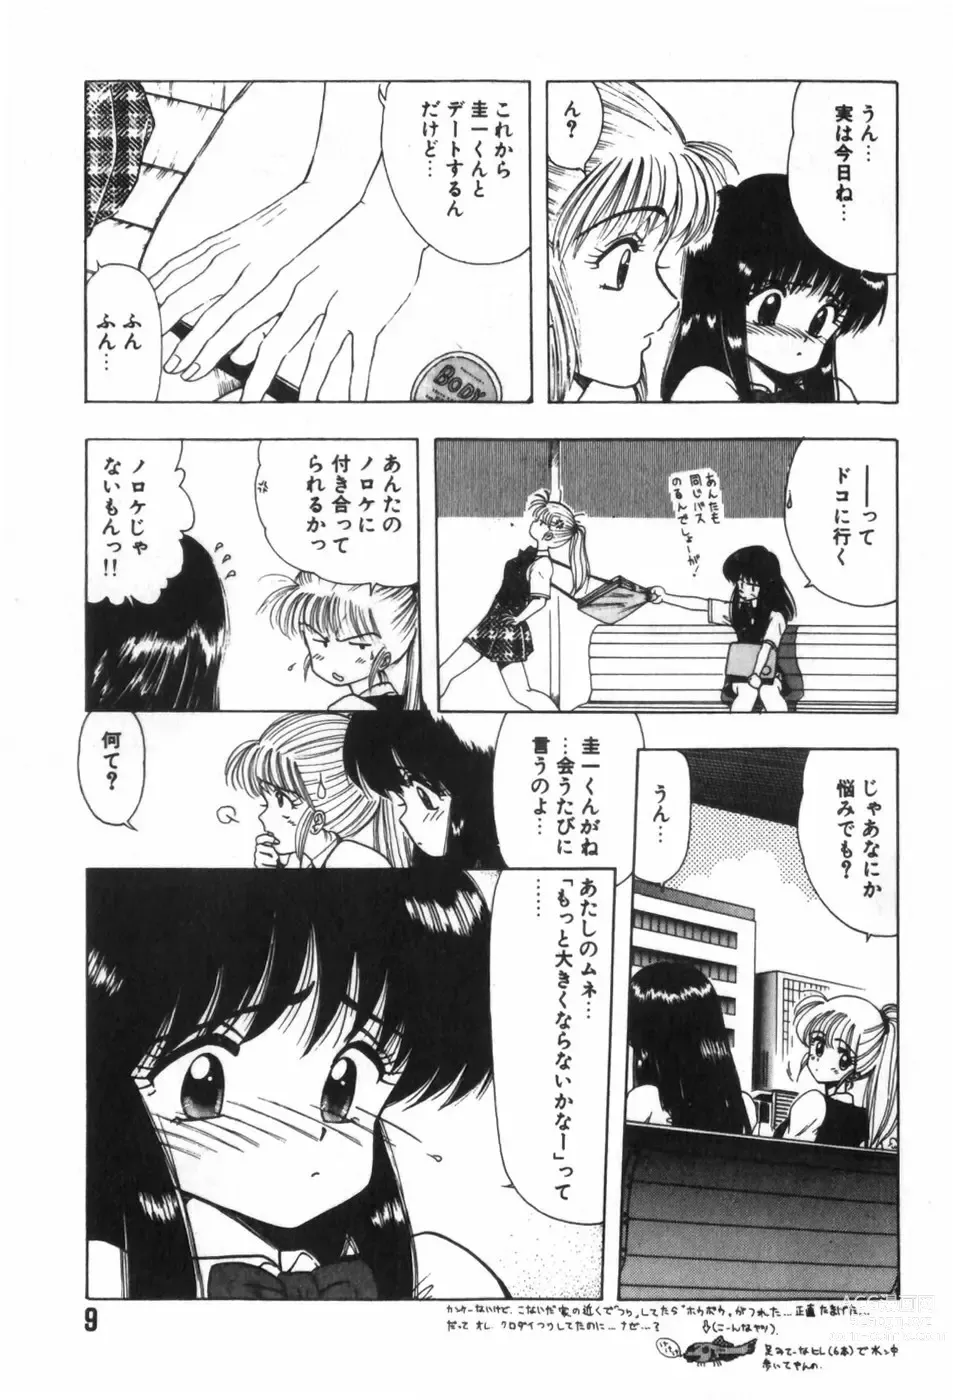 Page 13 of manga Funi Funi Hanjuku Musume